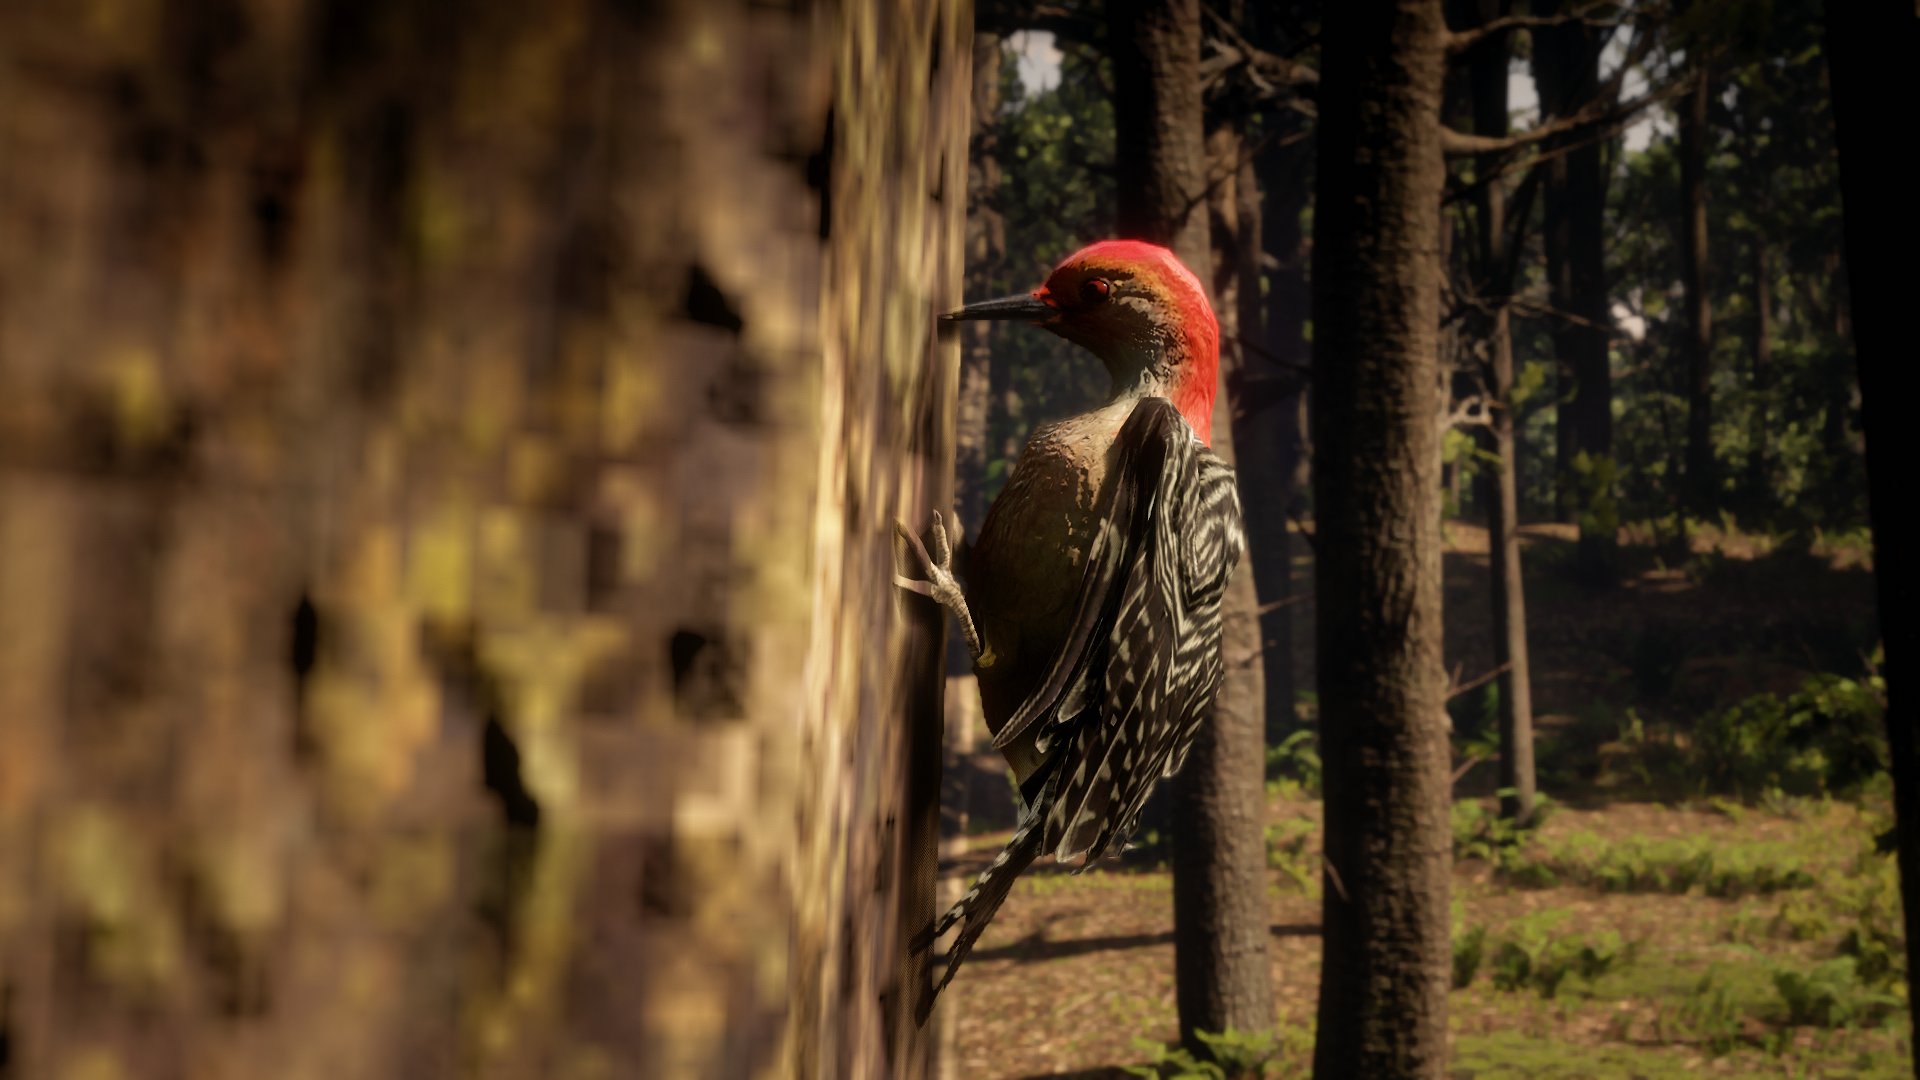 SLATZ_7 Twitter: "Red-Bellied Woodpecker #RockstarGames https://t.co/EJRFA1ZpMN" / Twitter